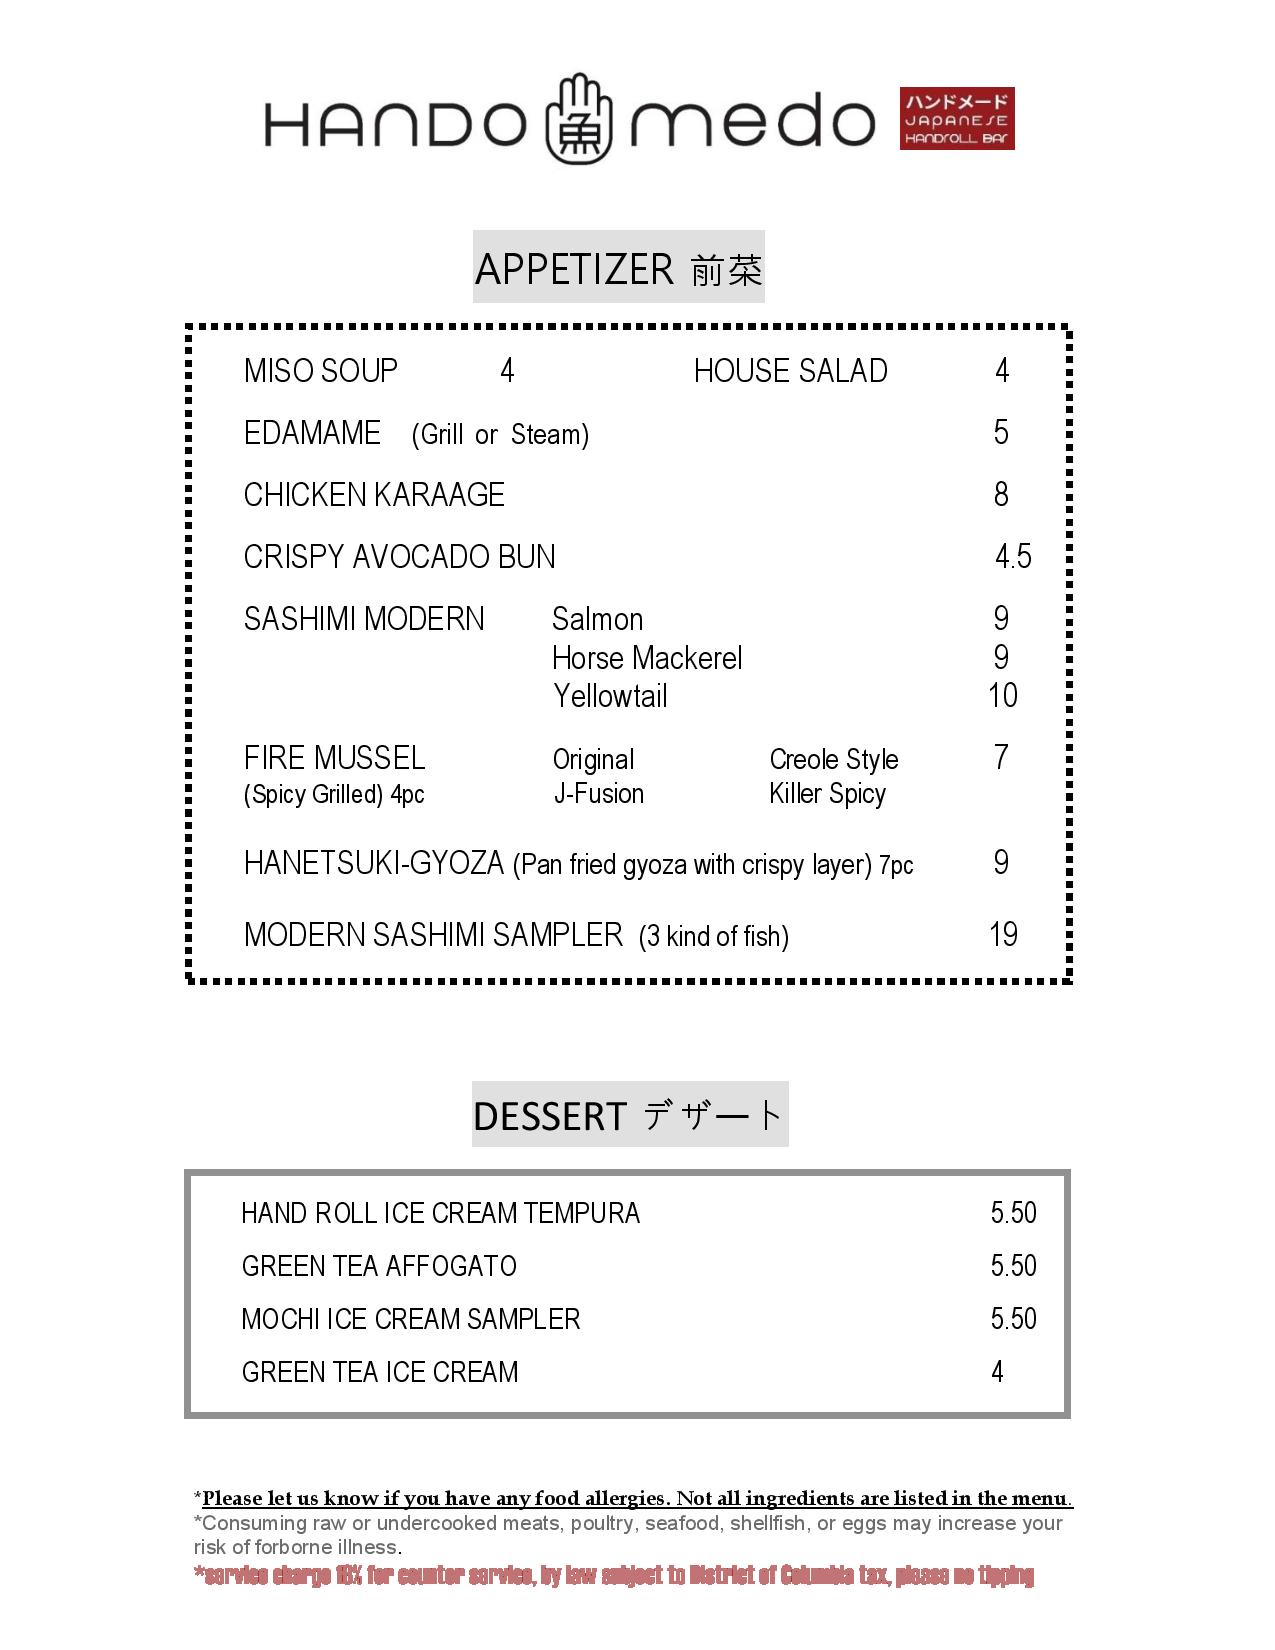 hando appetizer menu